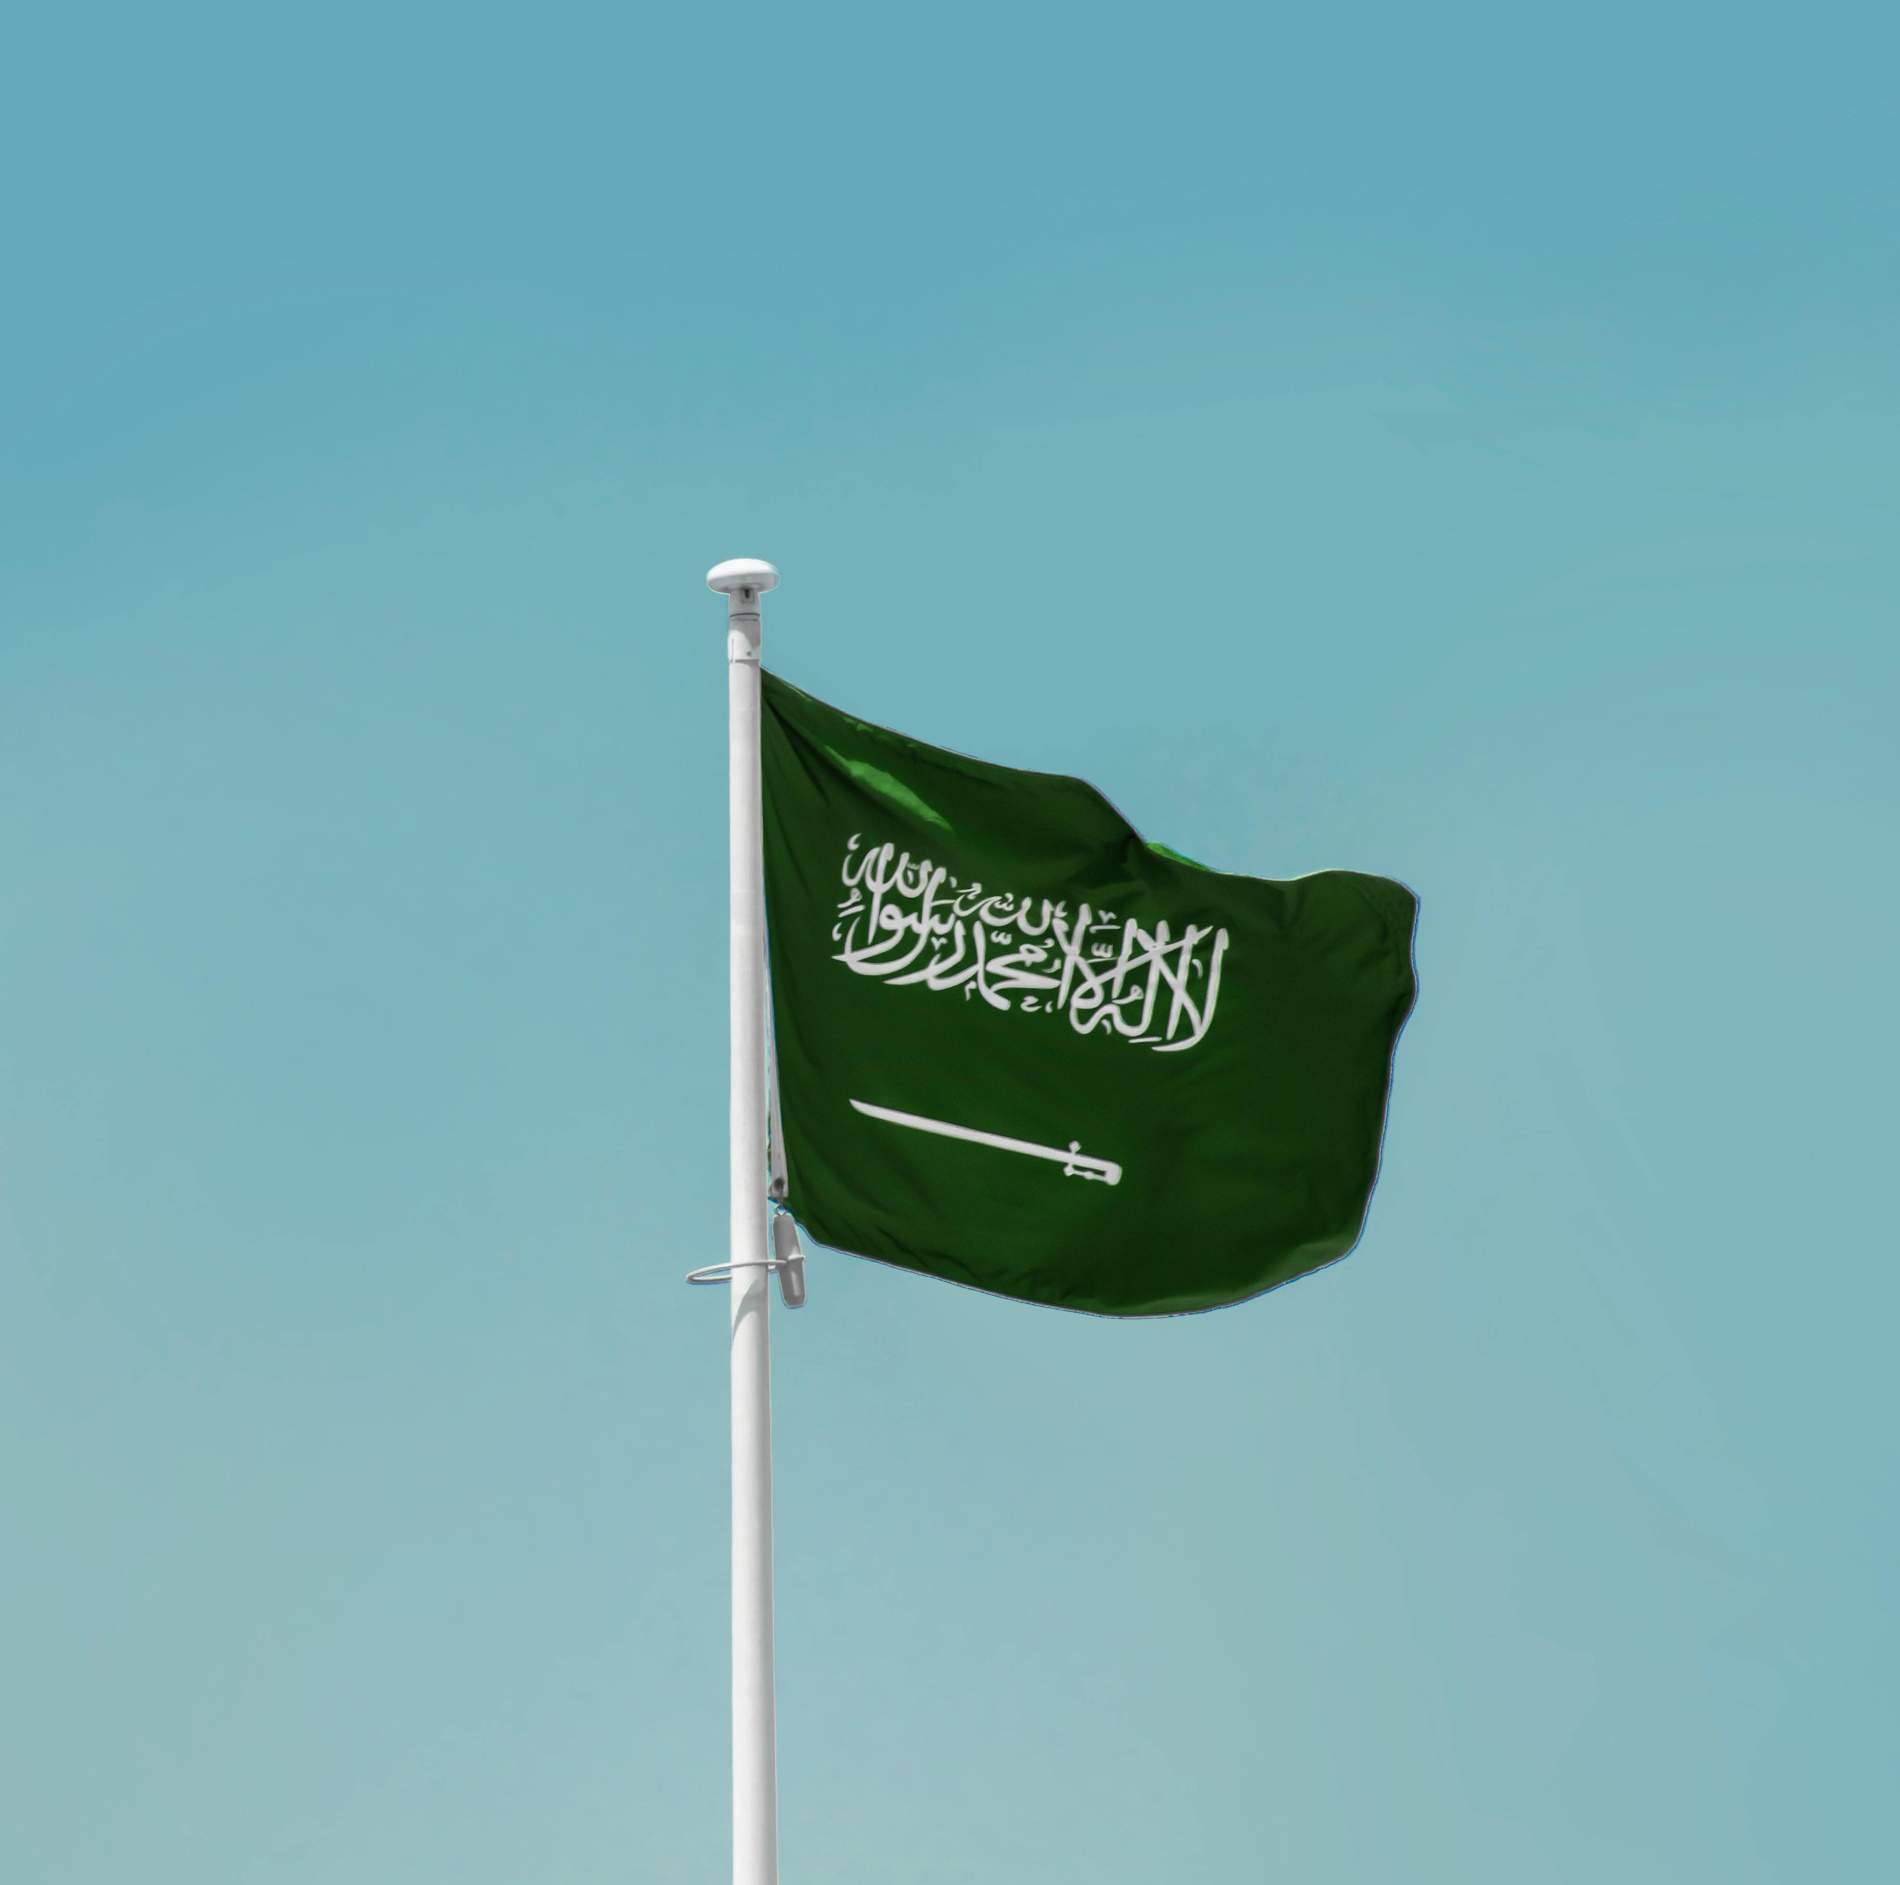 Arabia Saudí subraya la necesidad de una transición energética equitativa y justa